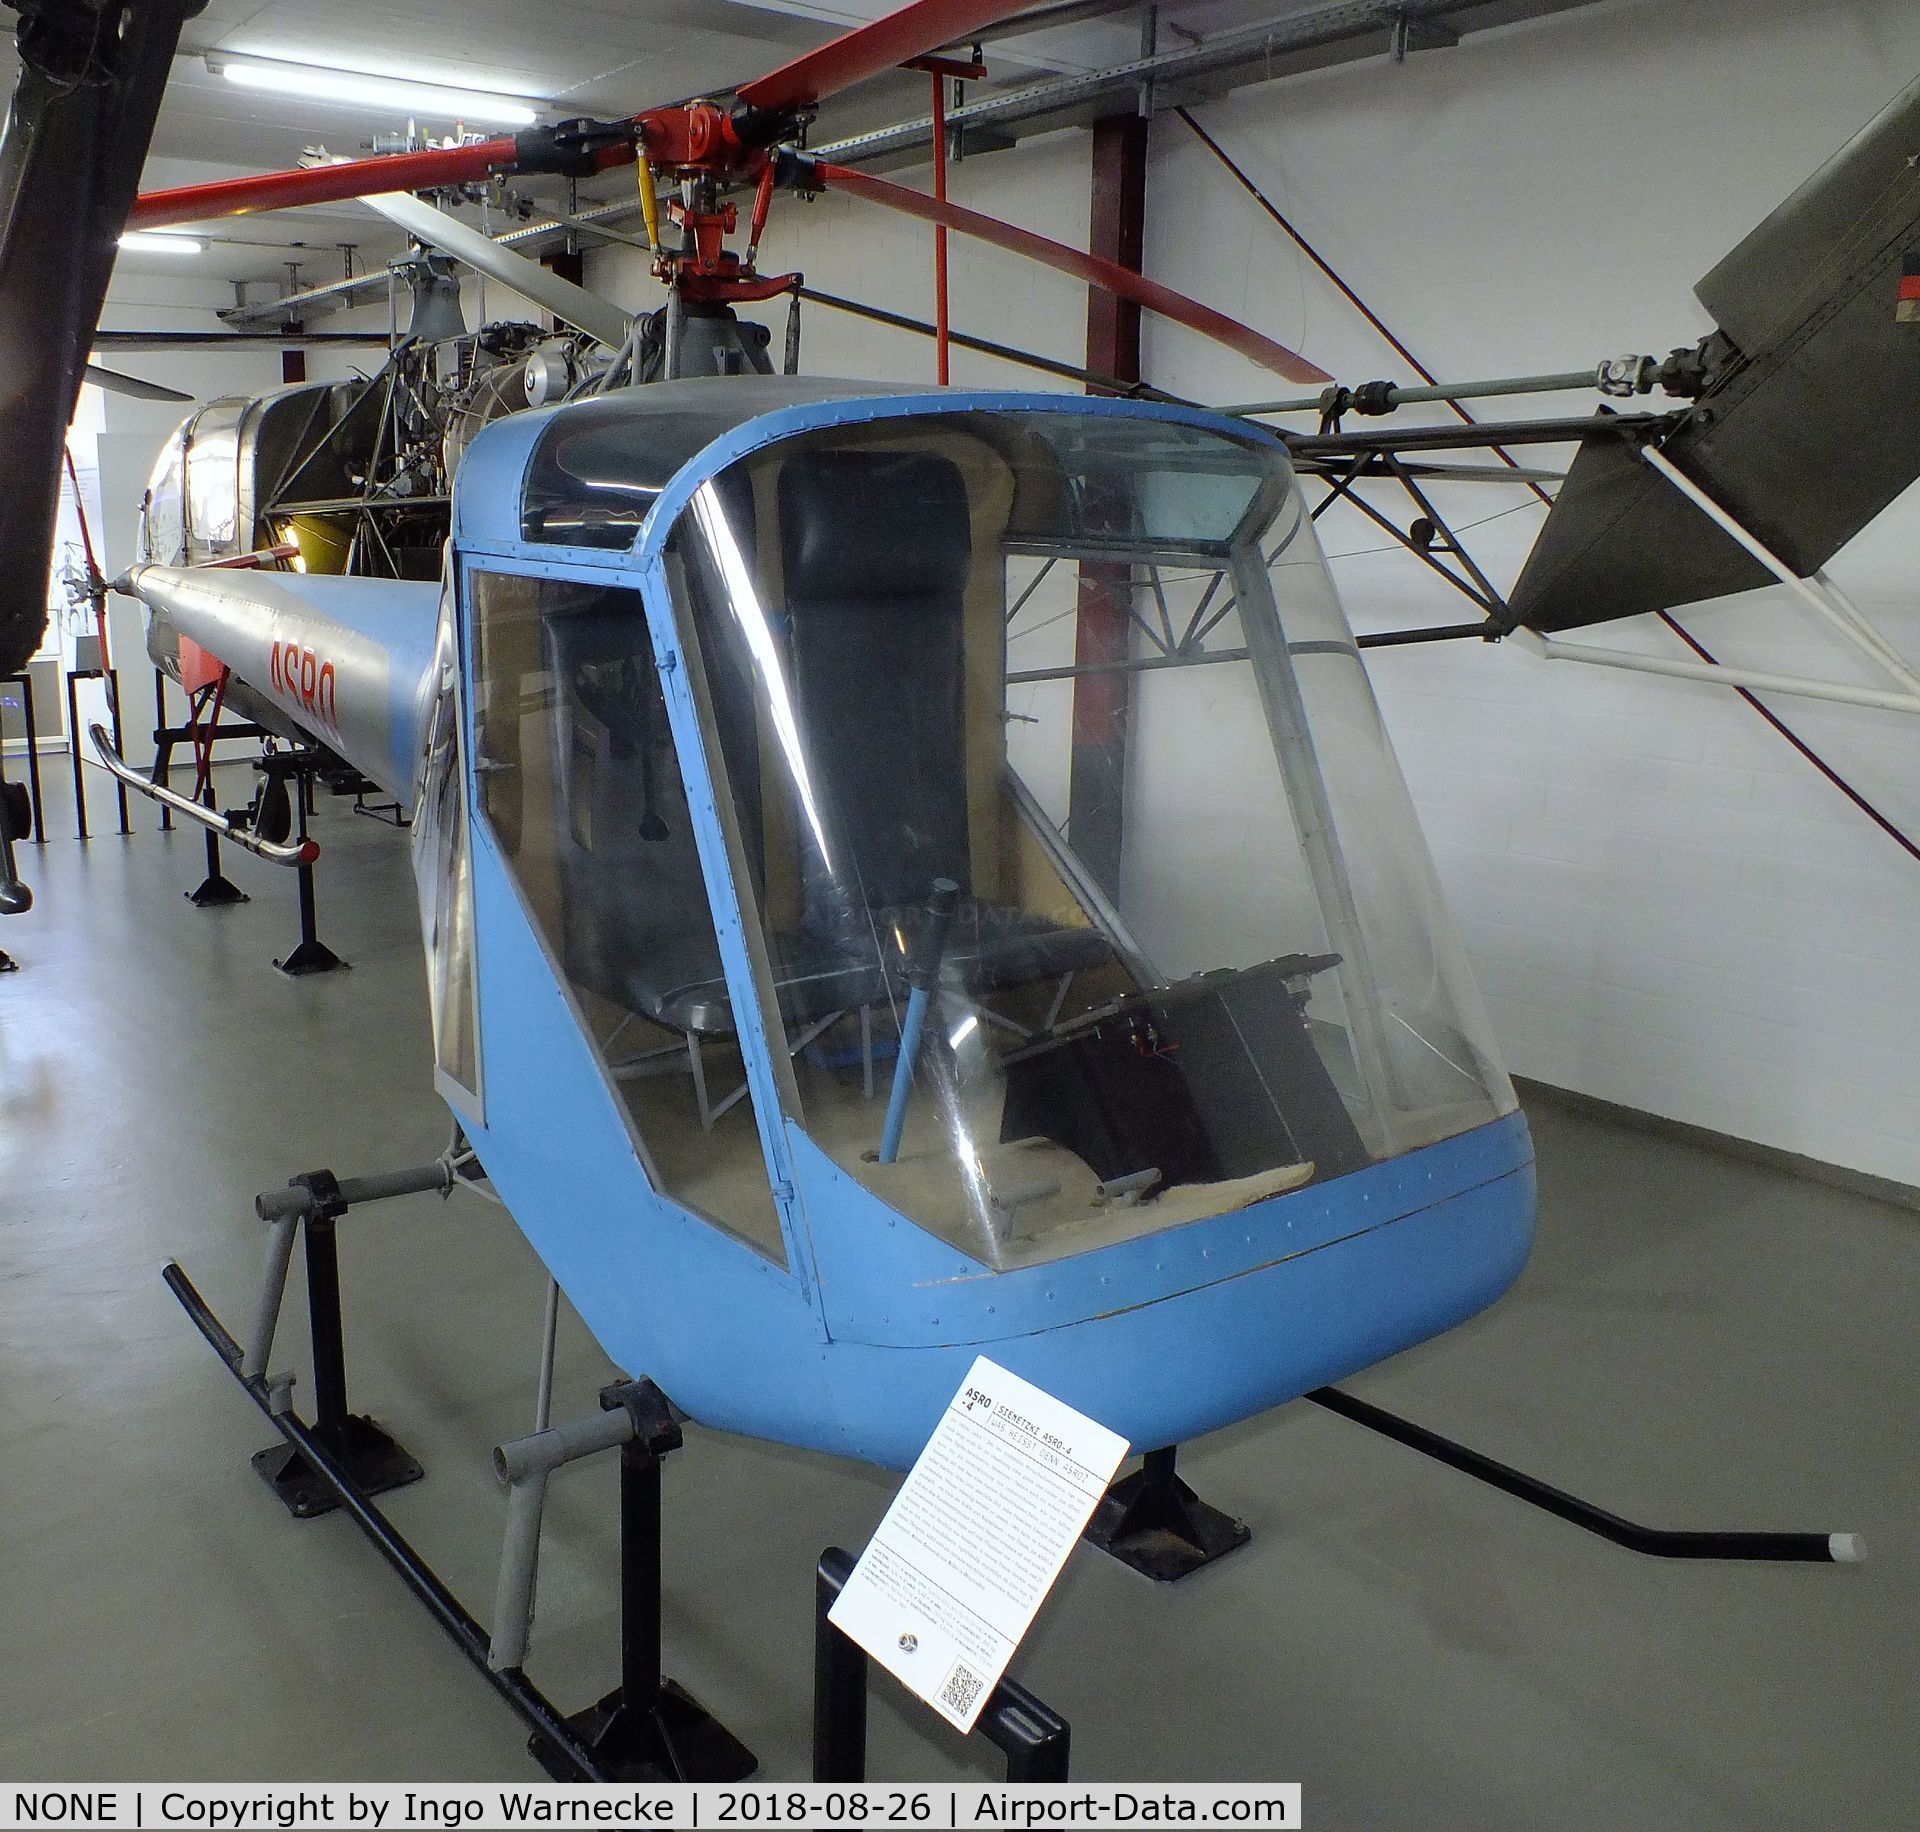 NONE, 1965 Siemetzki ASRO 4 C/N unknown, Siemetzki ASRO 4 at the Hubschraubermuseum (helicopter museum), Bückeburg